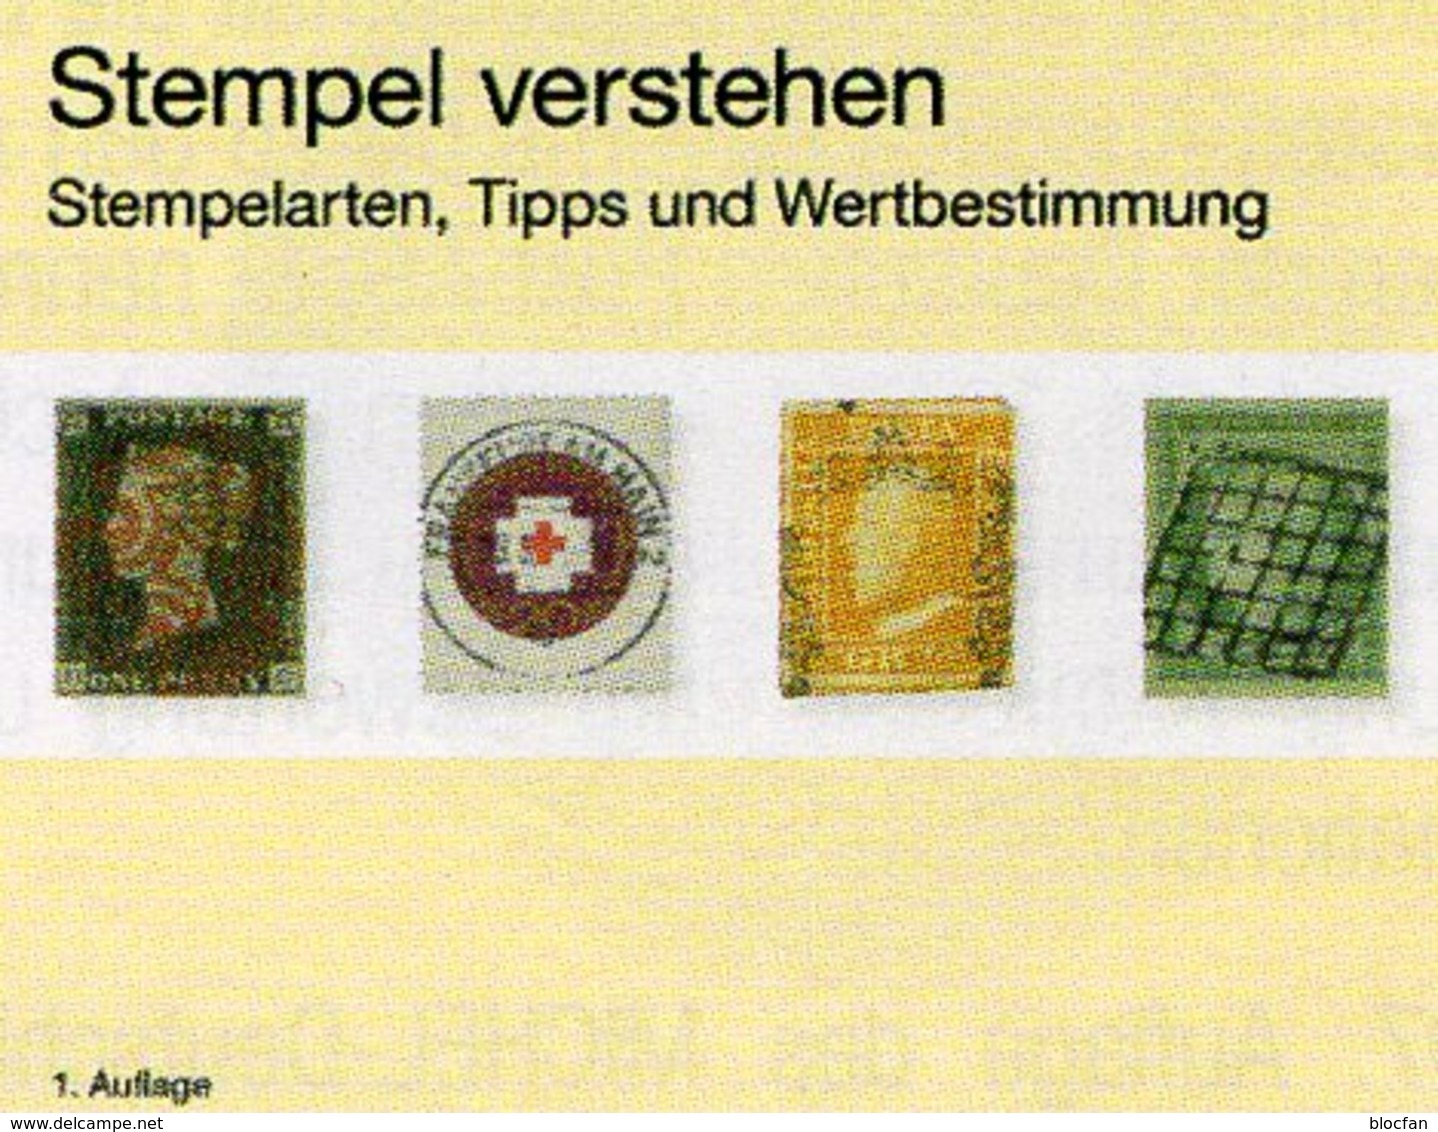 MICHEL Stempel Verstehen Ratgeber 2020 Neu 50€ Briefmarken Stempelarten Wert Bestimmen Stamps ISBN978 3 95402 252 6 - Speciale Uitgaven